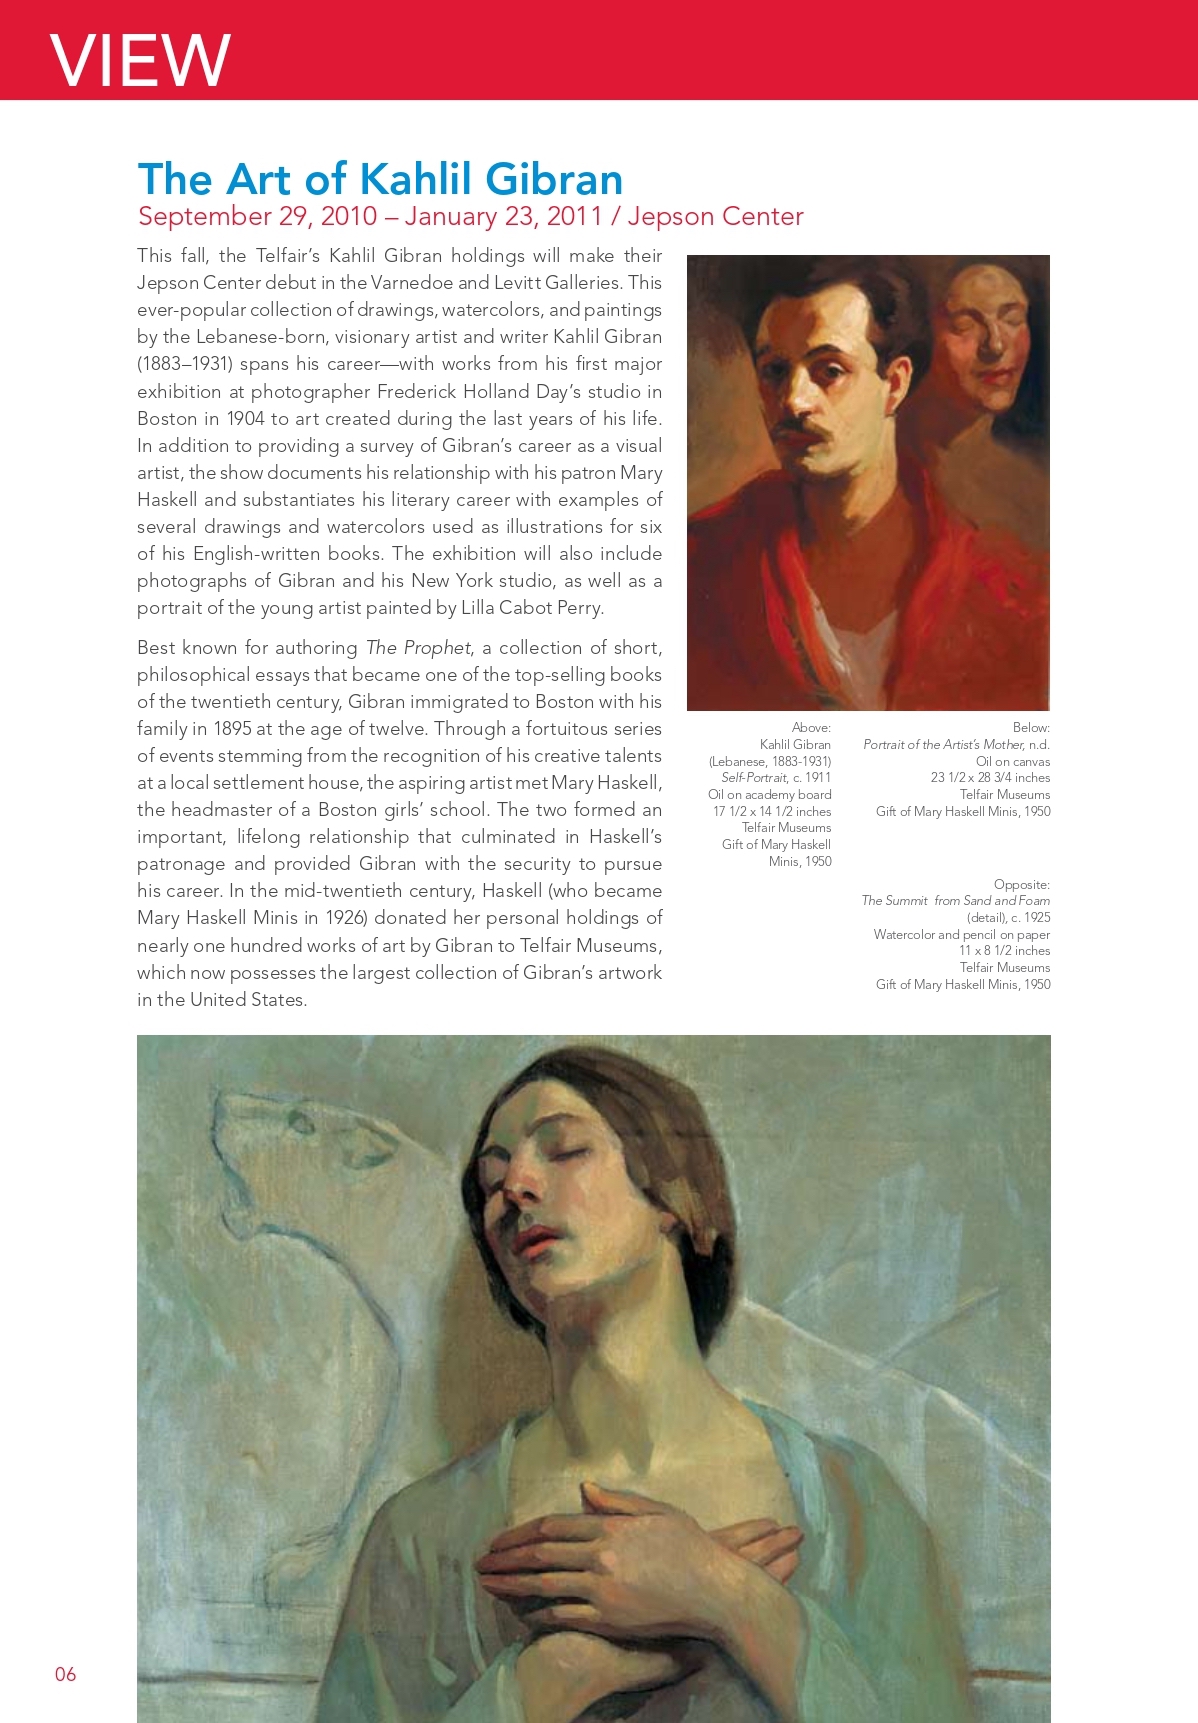 The Art of Kahlil Gibran, Telfair, Issue 8, Sept-Dec 2010, pp. 6-7.